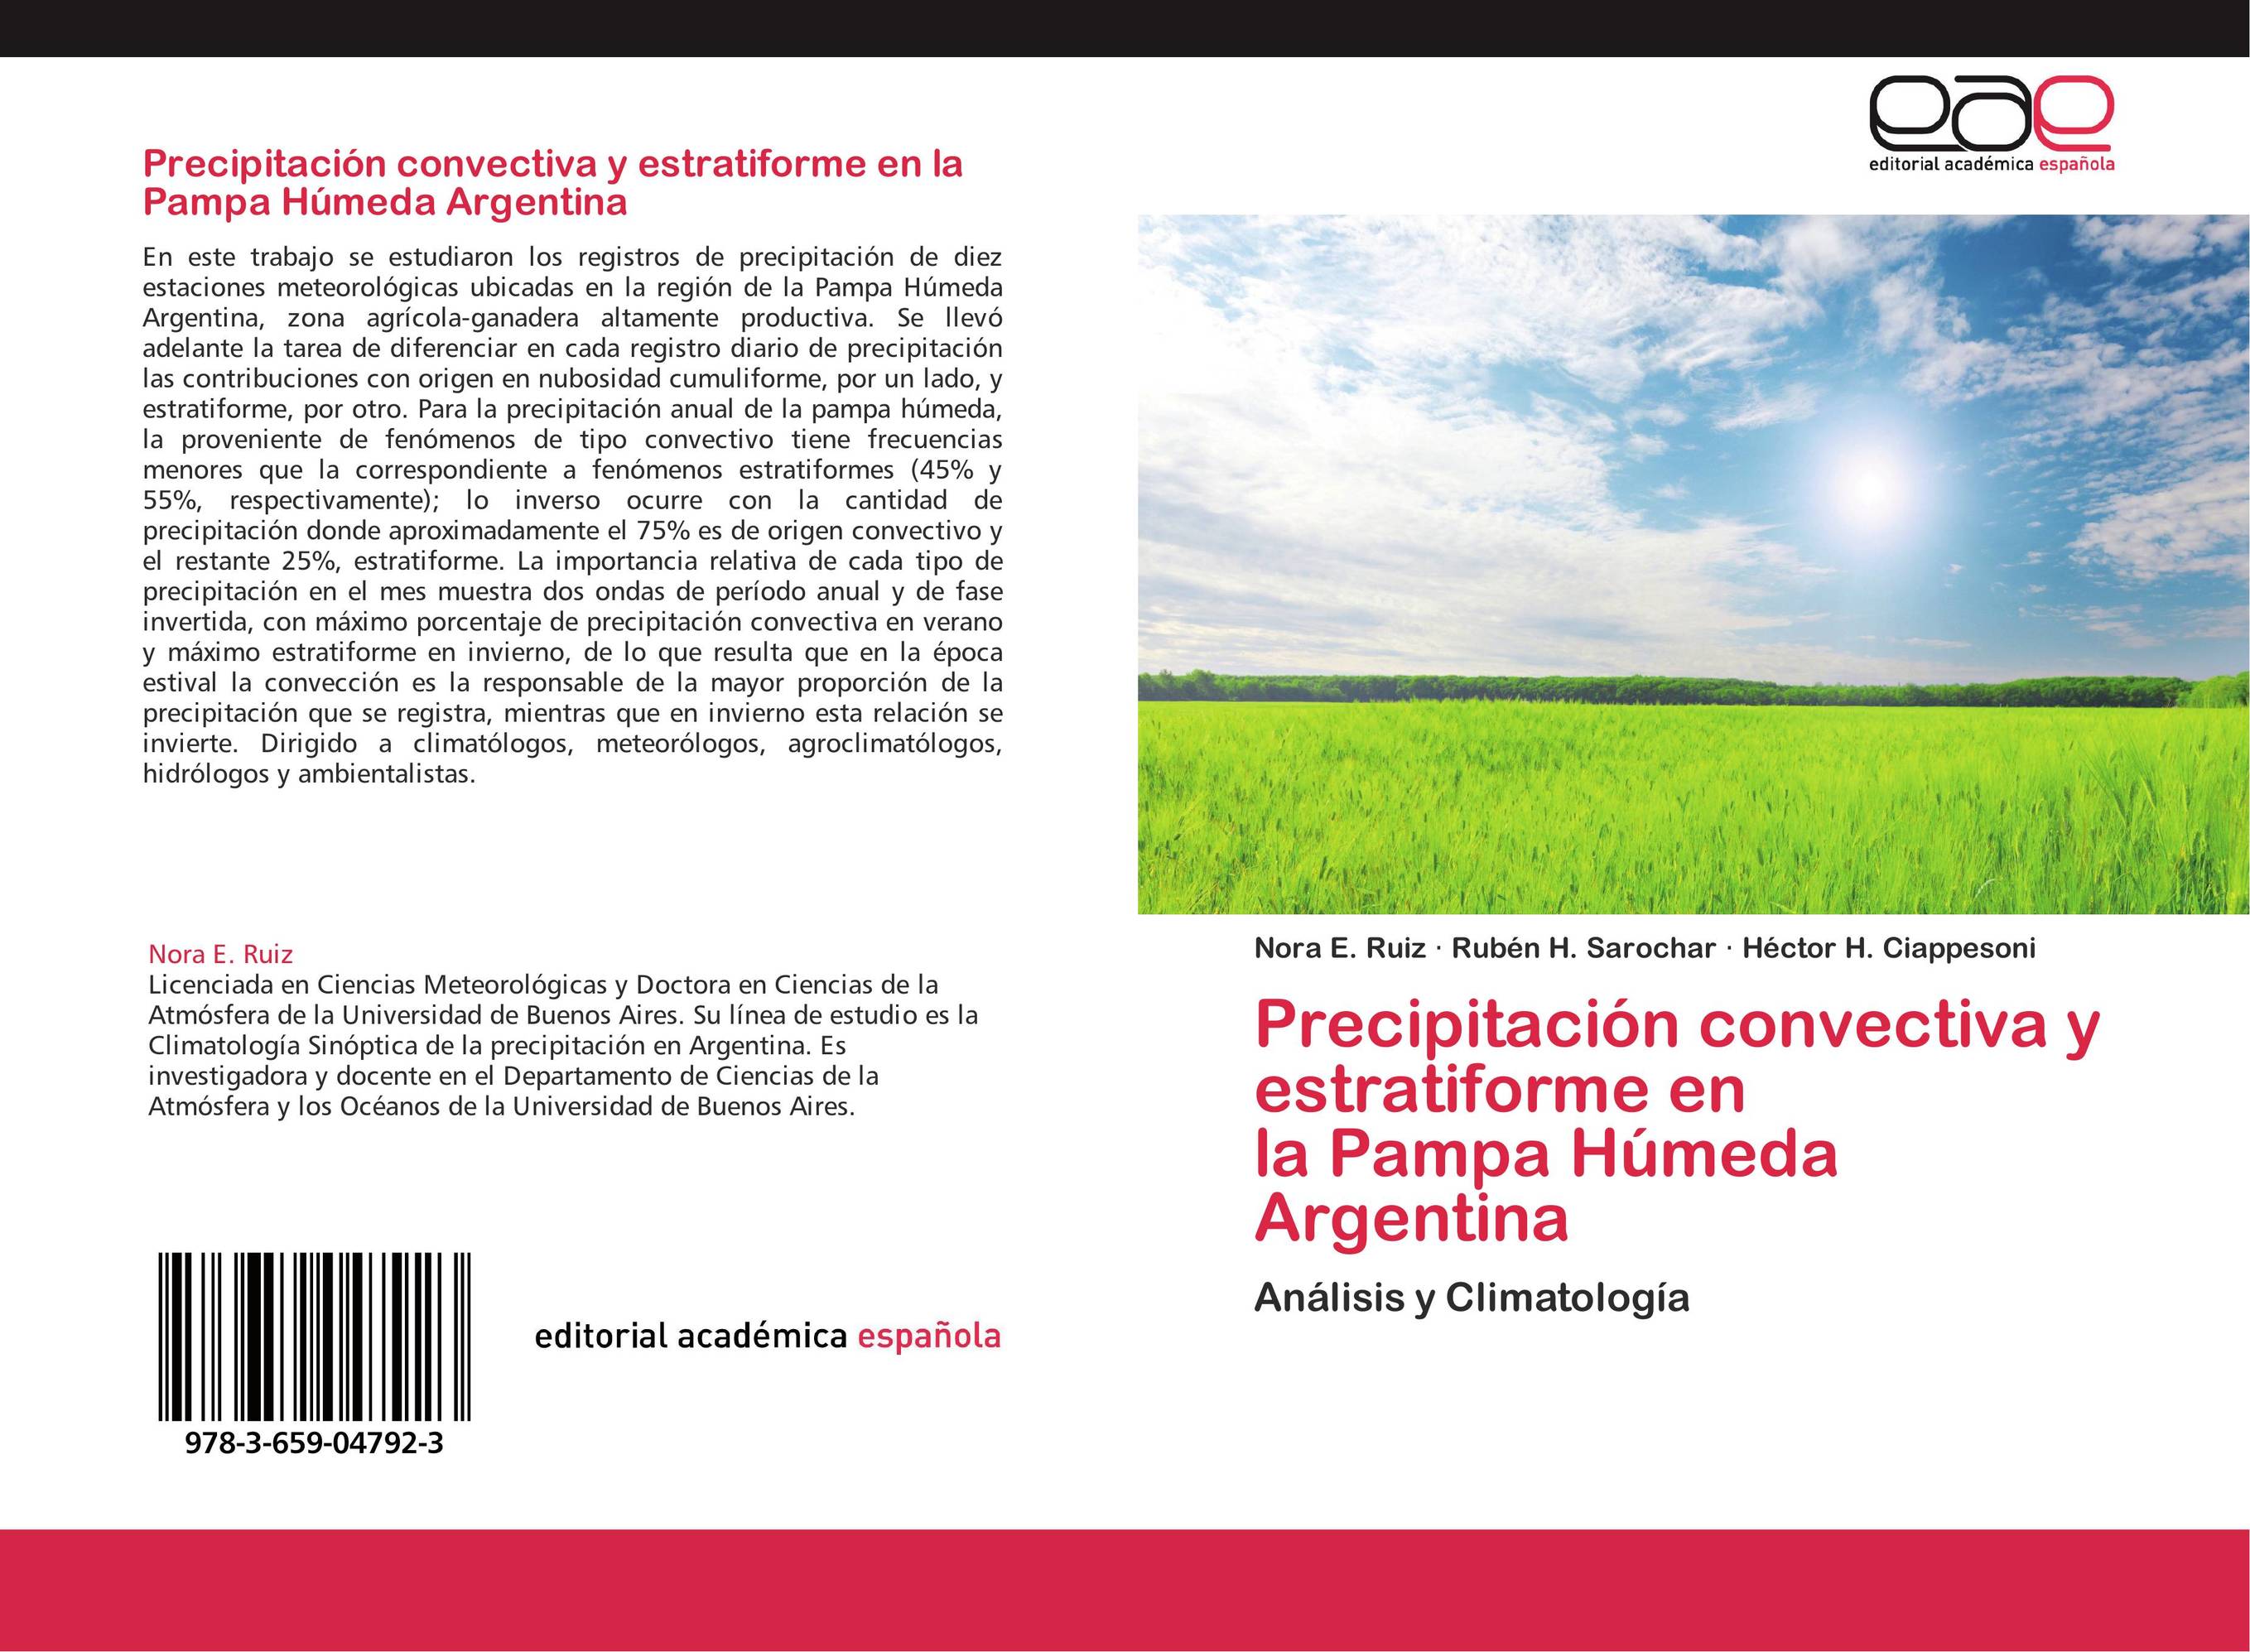 Precipitación convectiva y estratiforme en  la Pampa Húmeda Argentina